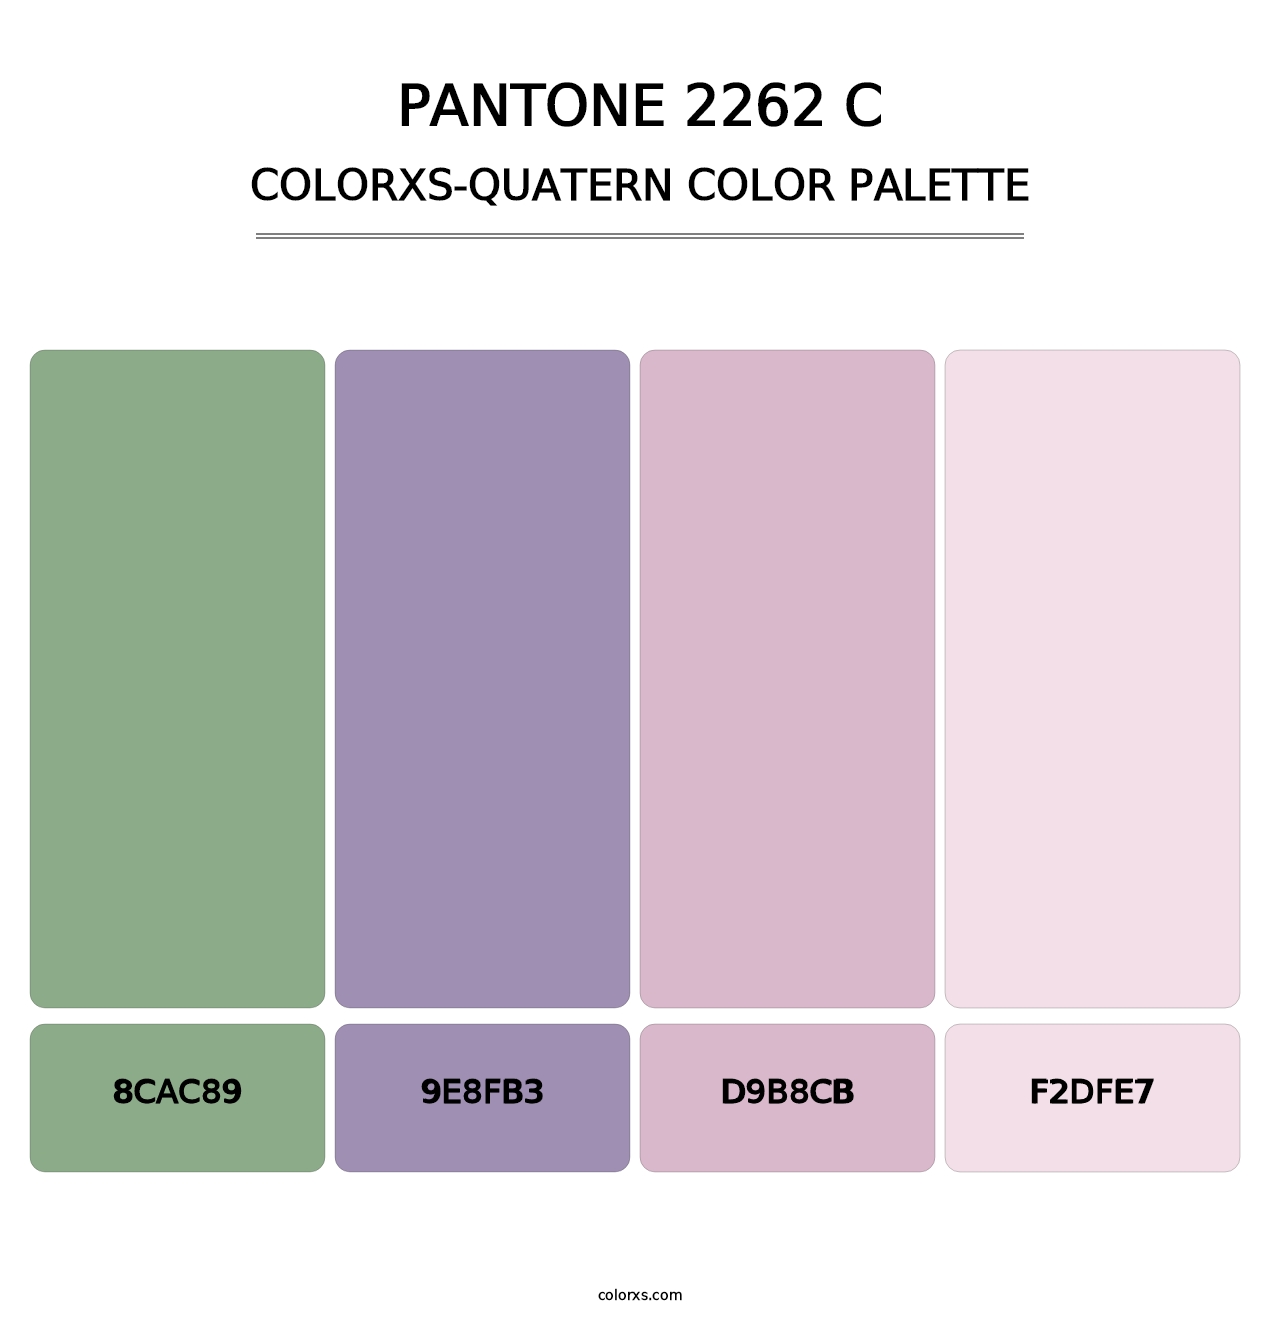 PANTONE 2262 C - Colorxs Quatern Palette